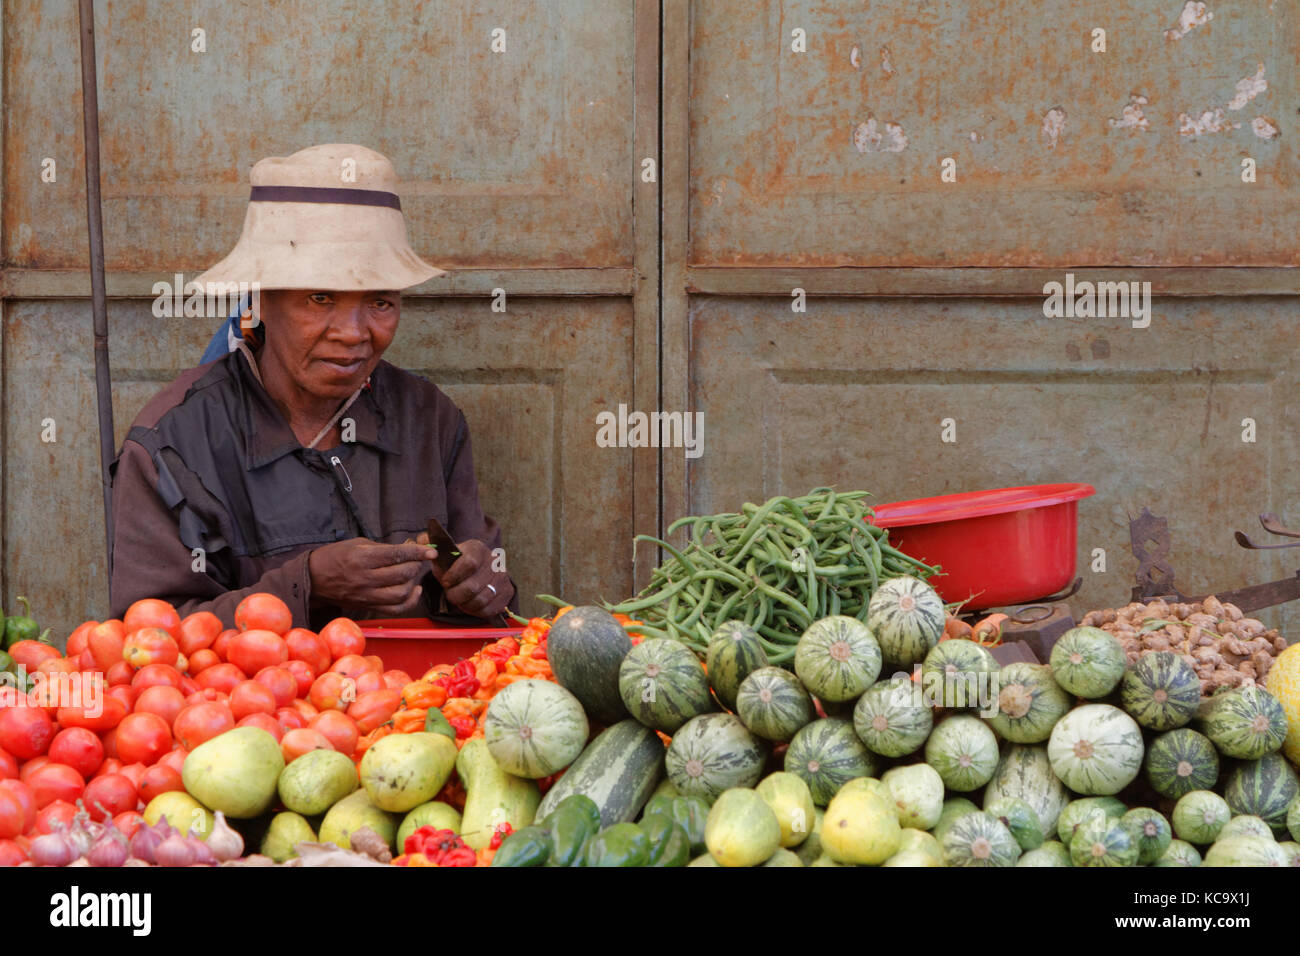 BETAFO, MADAGASCAR, 17 novembre 2015 : al mercato. Le risaie irrigate della zona sono emblematiche degli altopiani malgascio e sono nomina Foto Stock